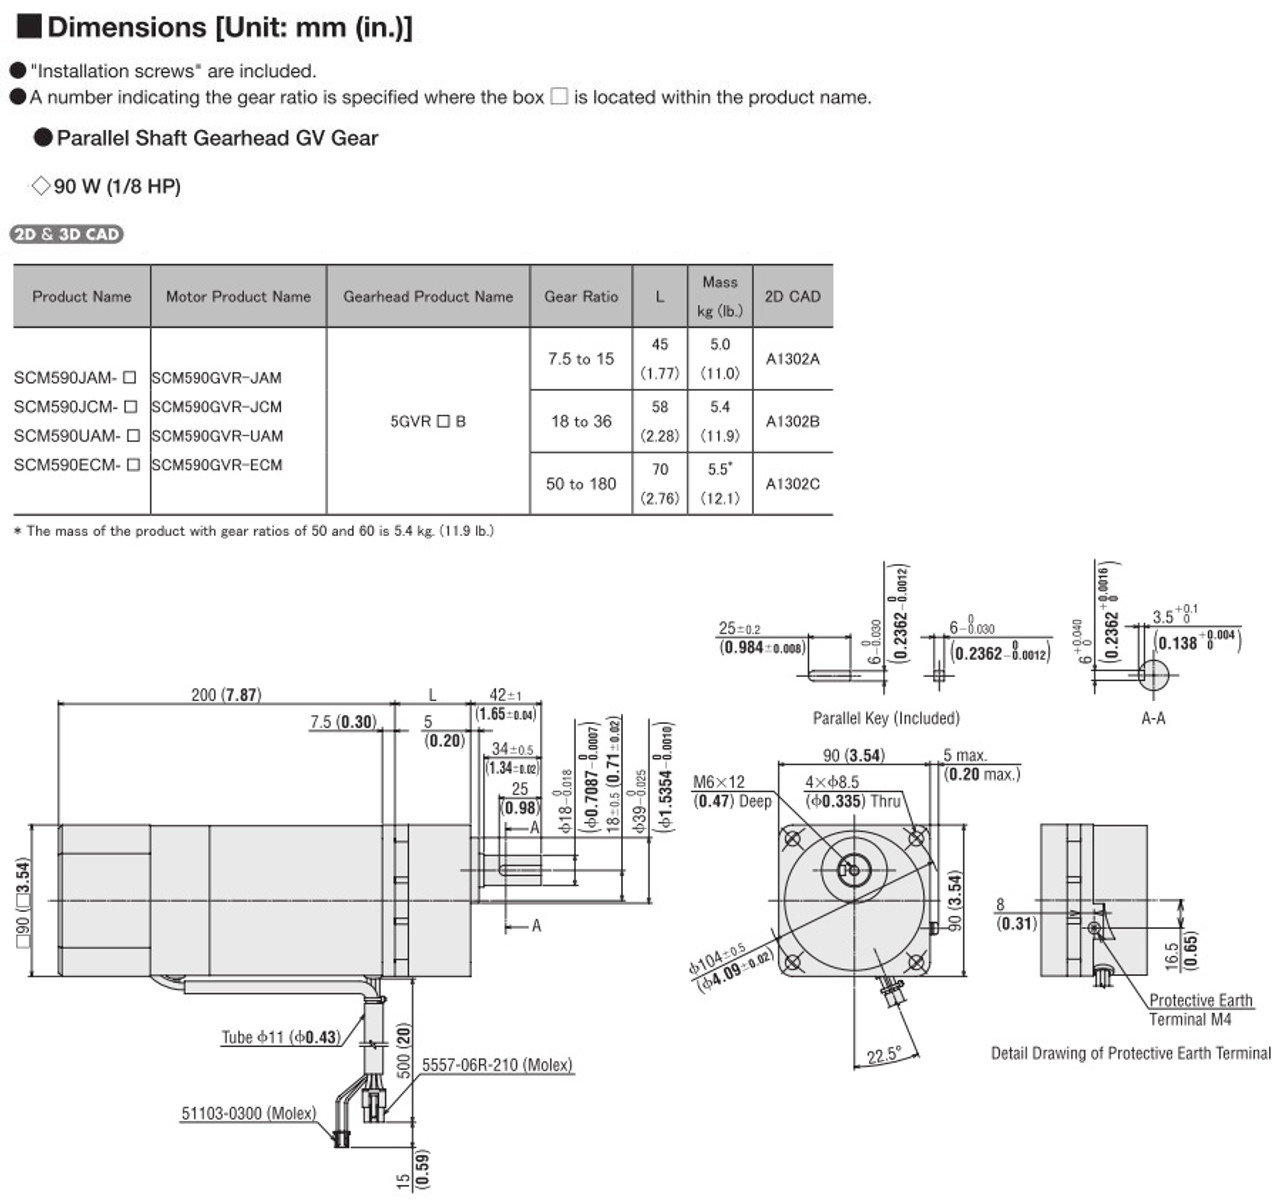 SCM590UAM-7.5 - Dimensions